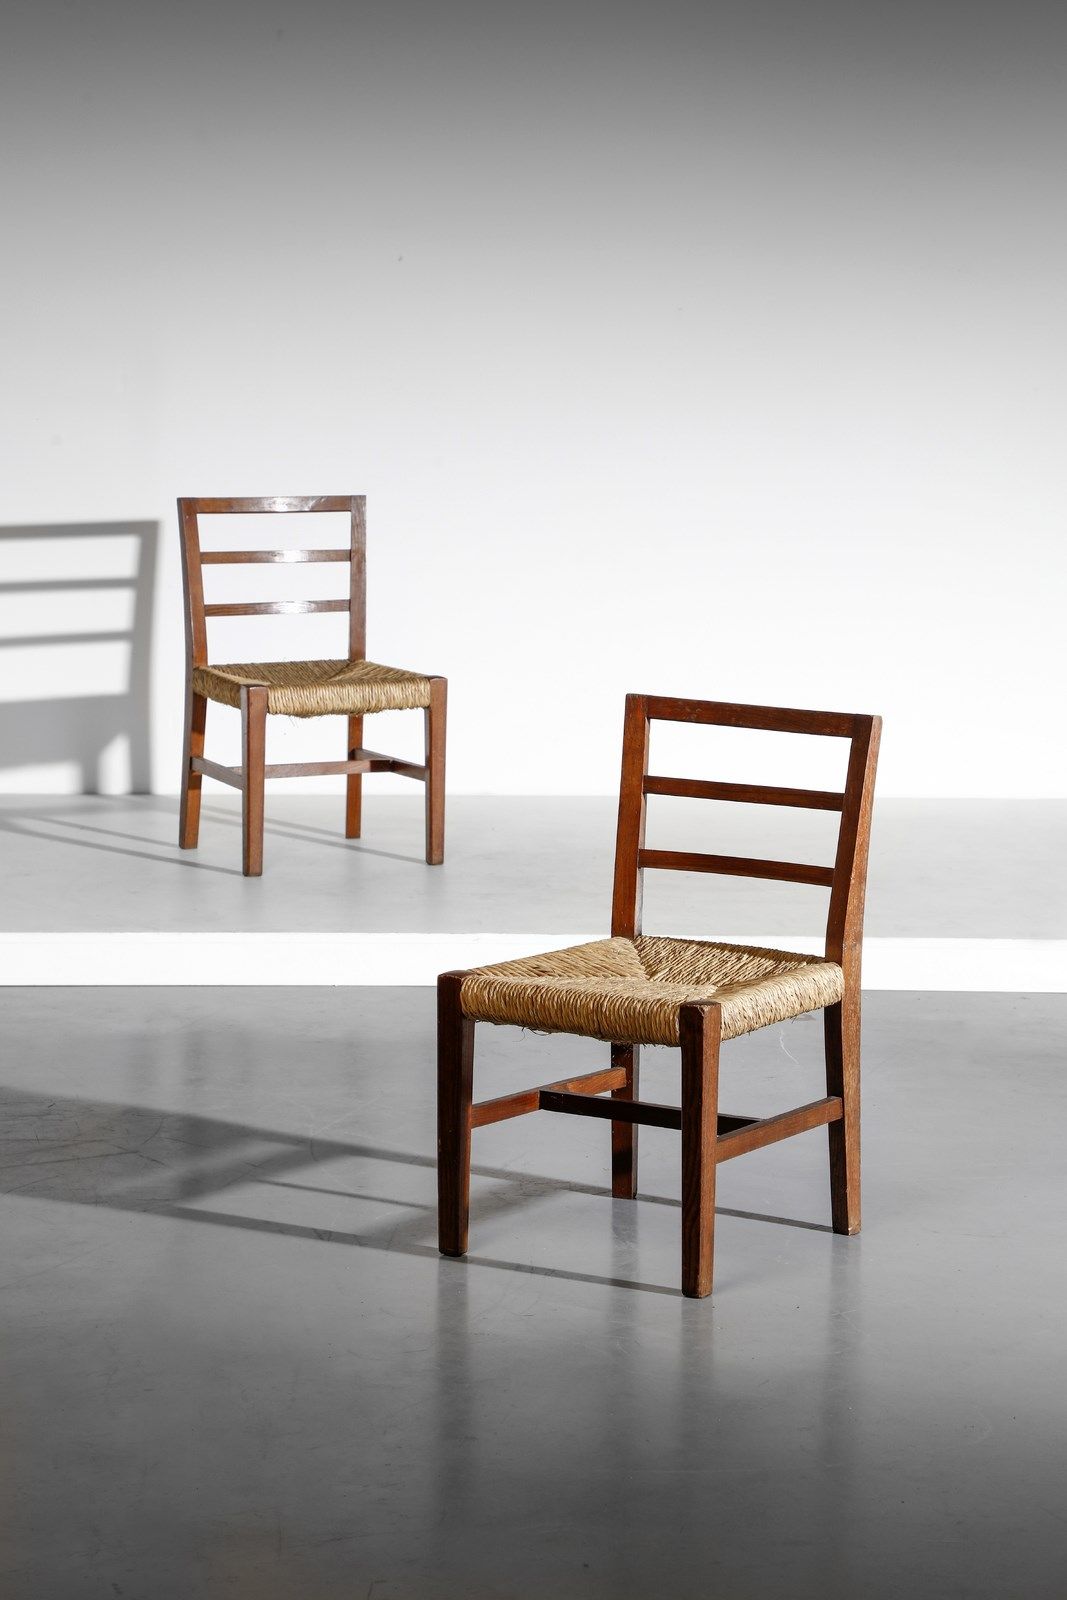 WENTER MARINI GIORGIO GIORGIO 一对椅子。橡木和绳子。Cm 47.00 x 76.00 x 45.00. 1950年代。